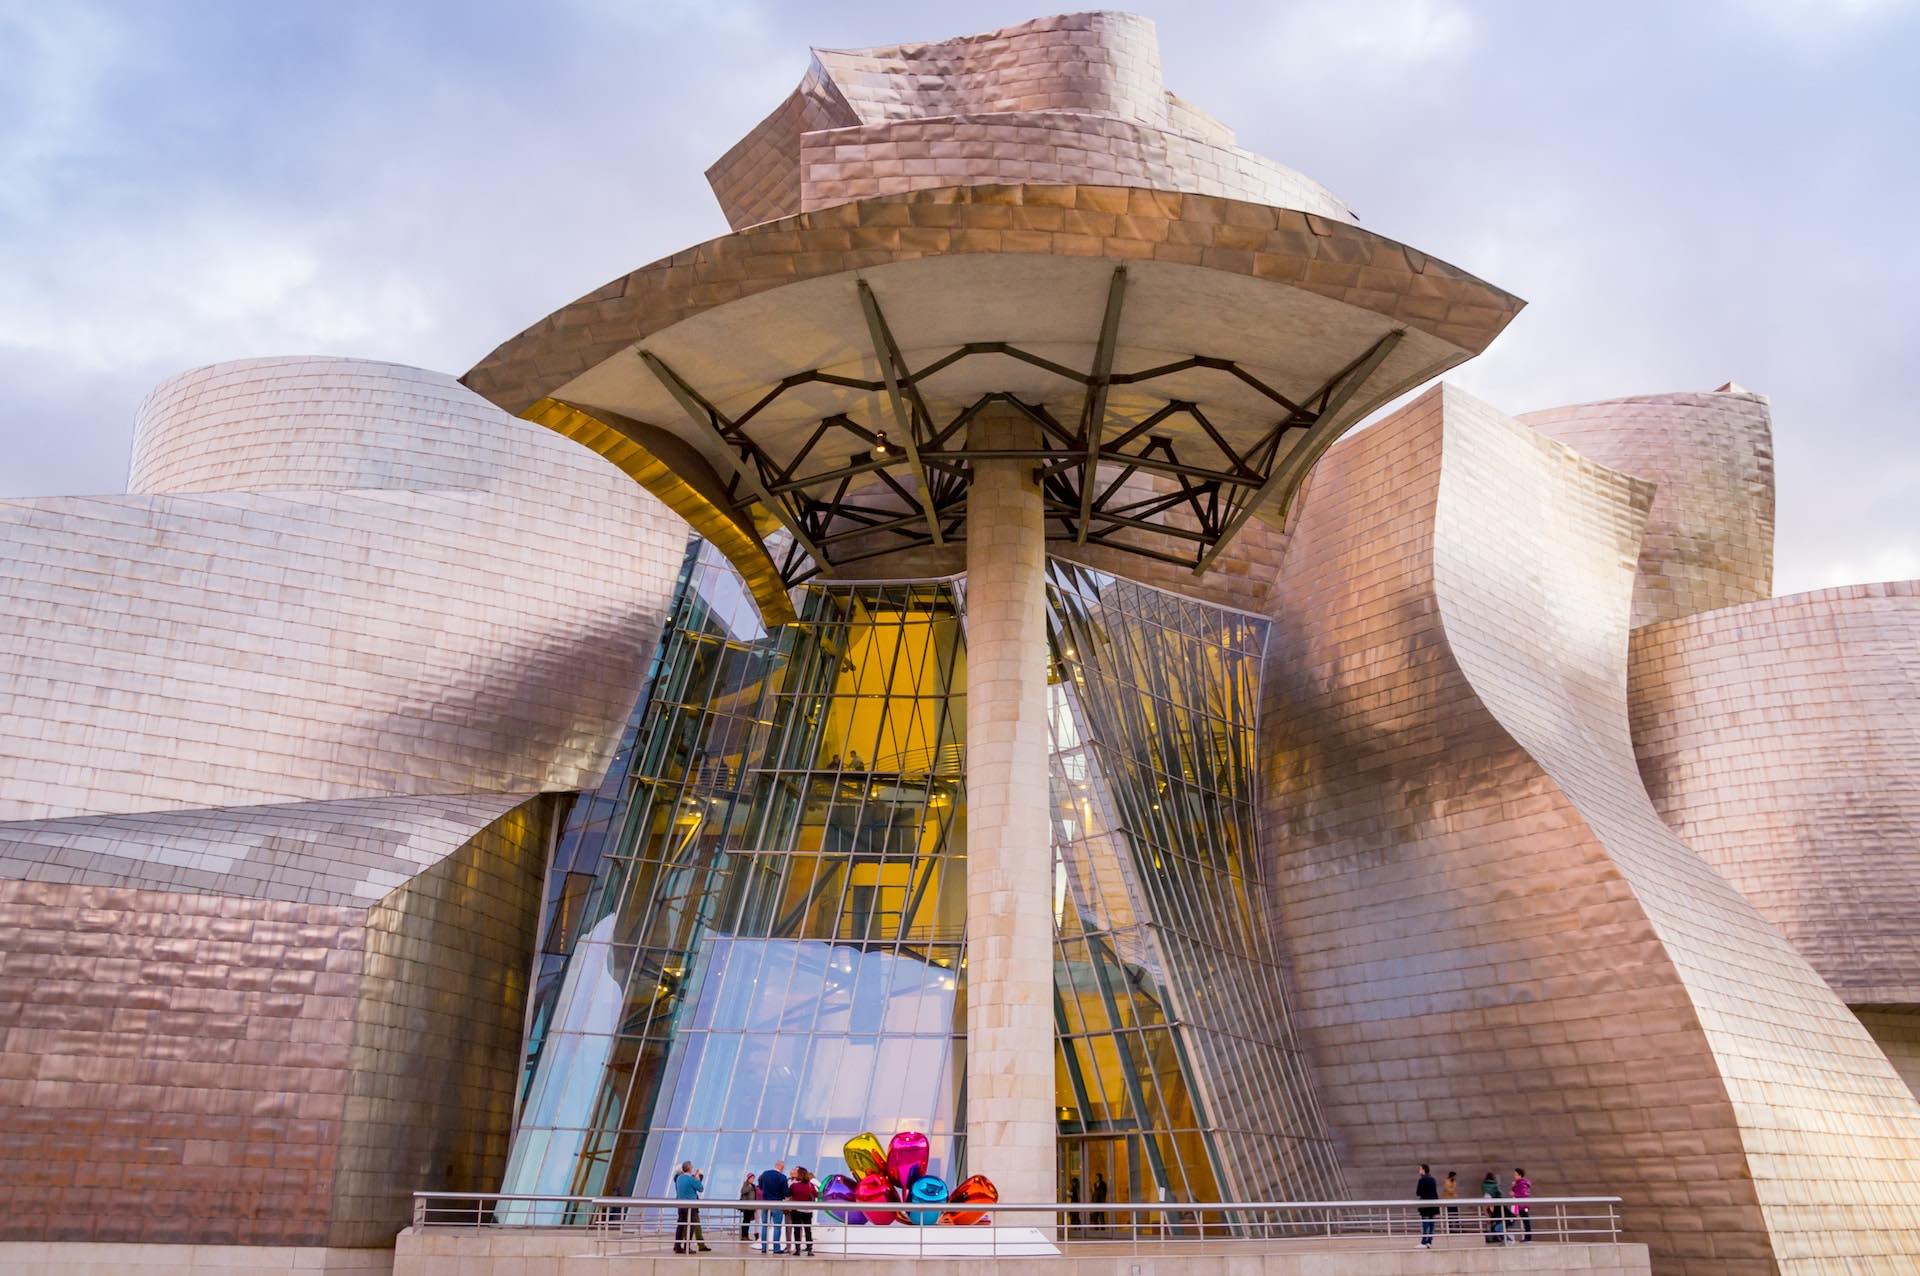 There Guggenheim Museum in Bilbao